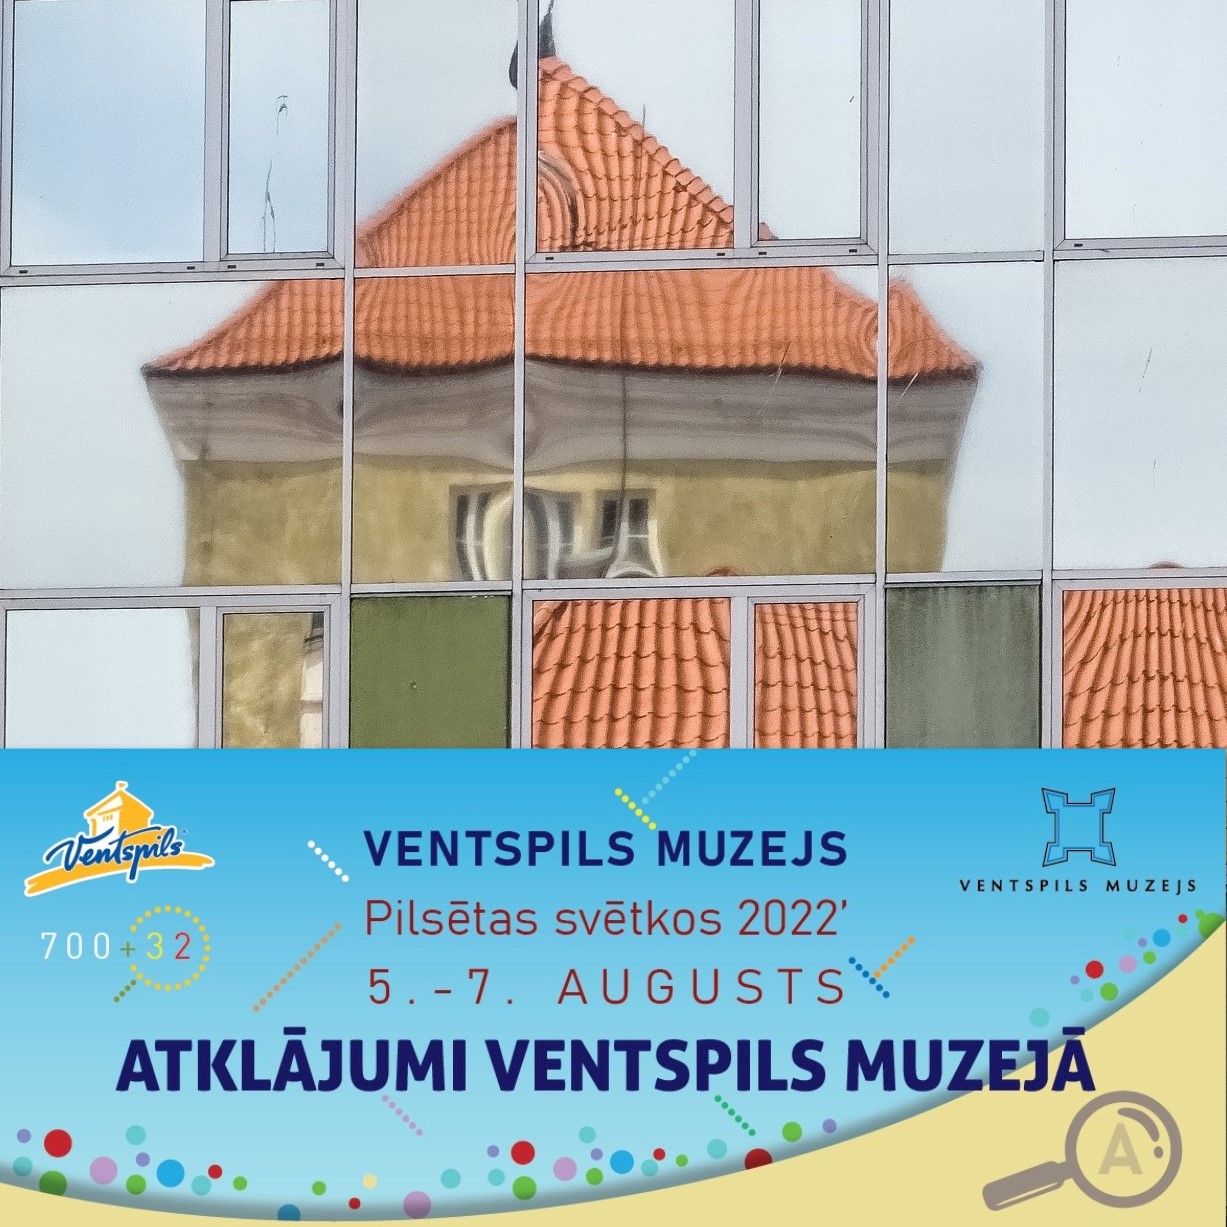 Atklājumi Ventspils muzejā| Ventspils muzejs Pilsētas svētkos 2022’, 5.-7.augustā